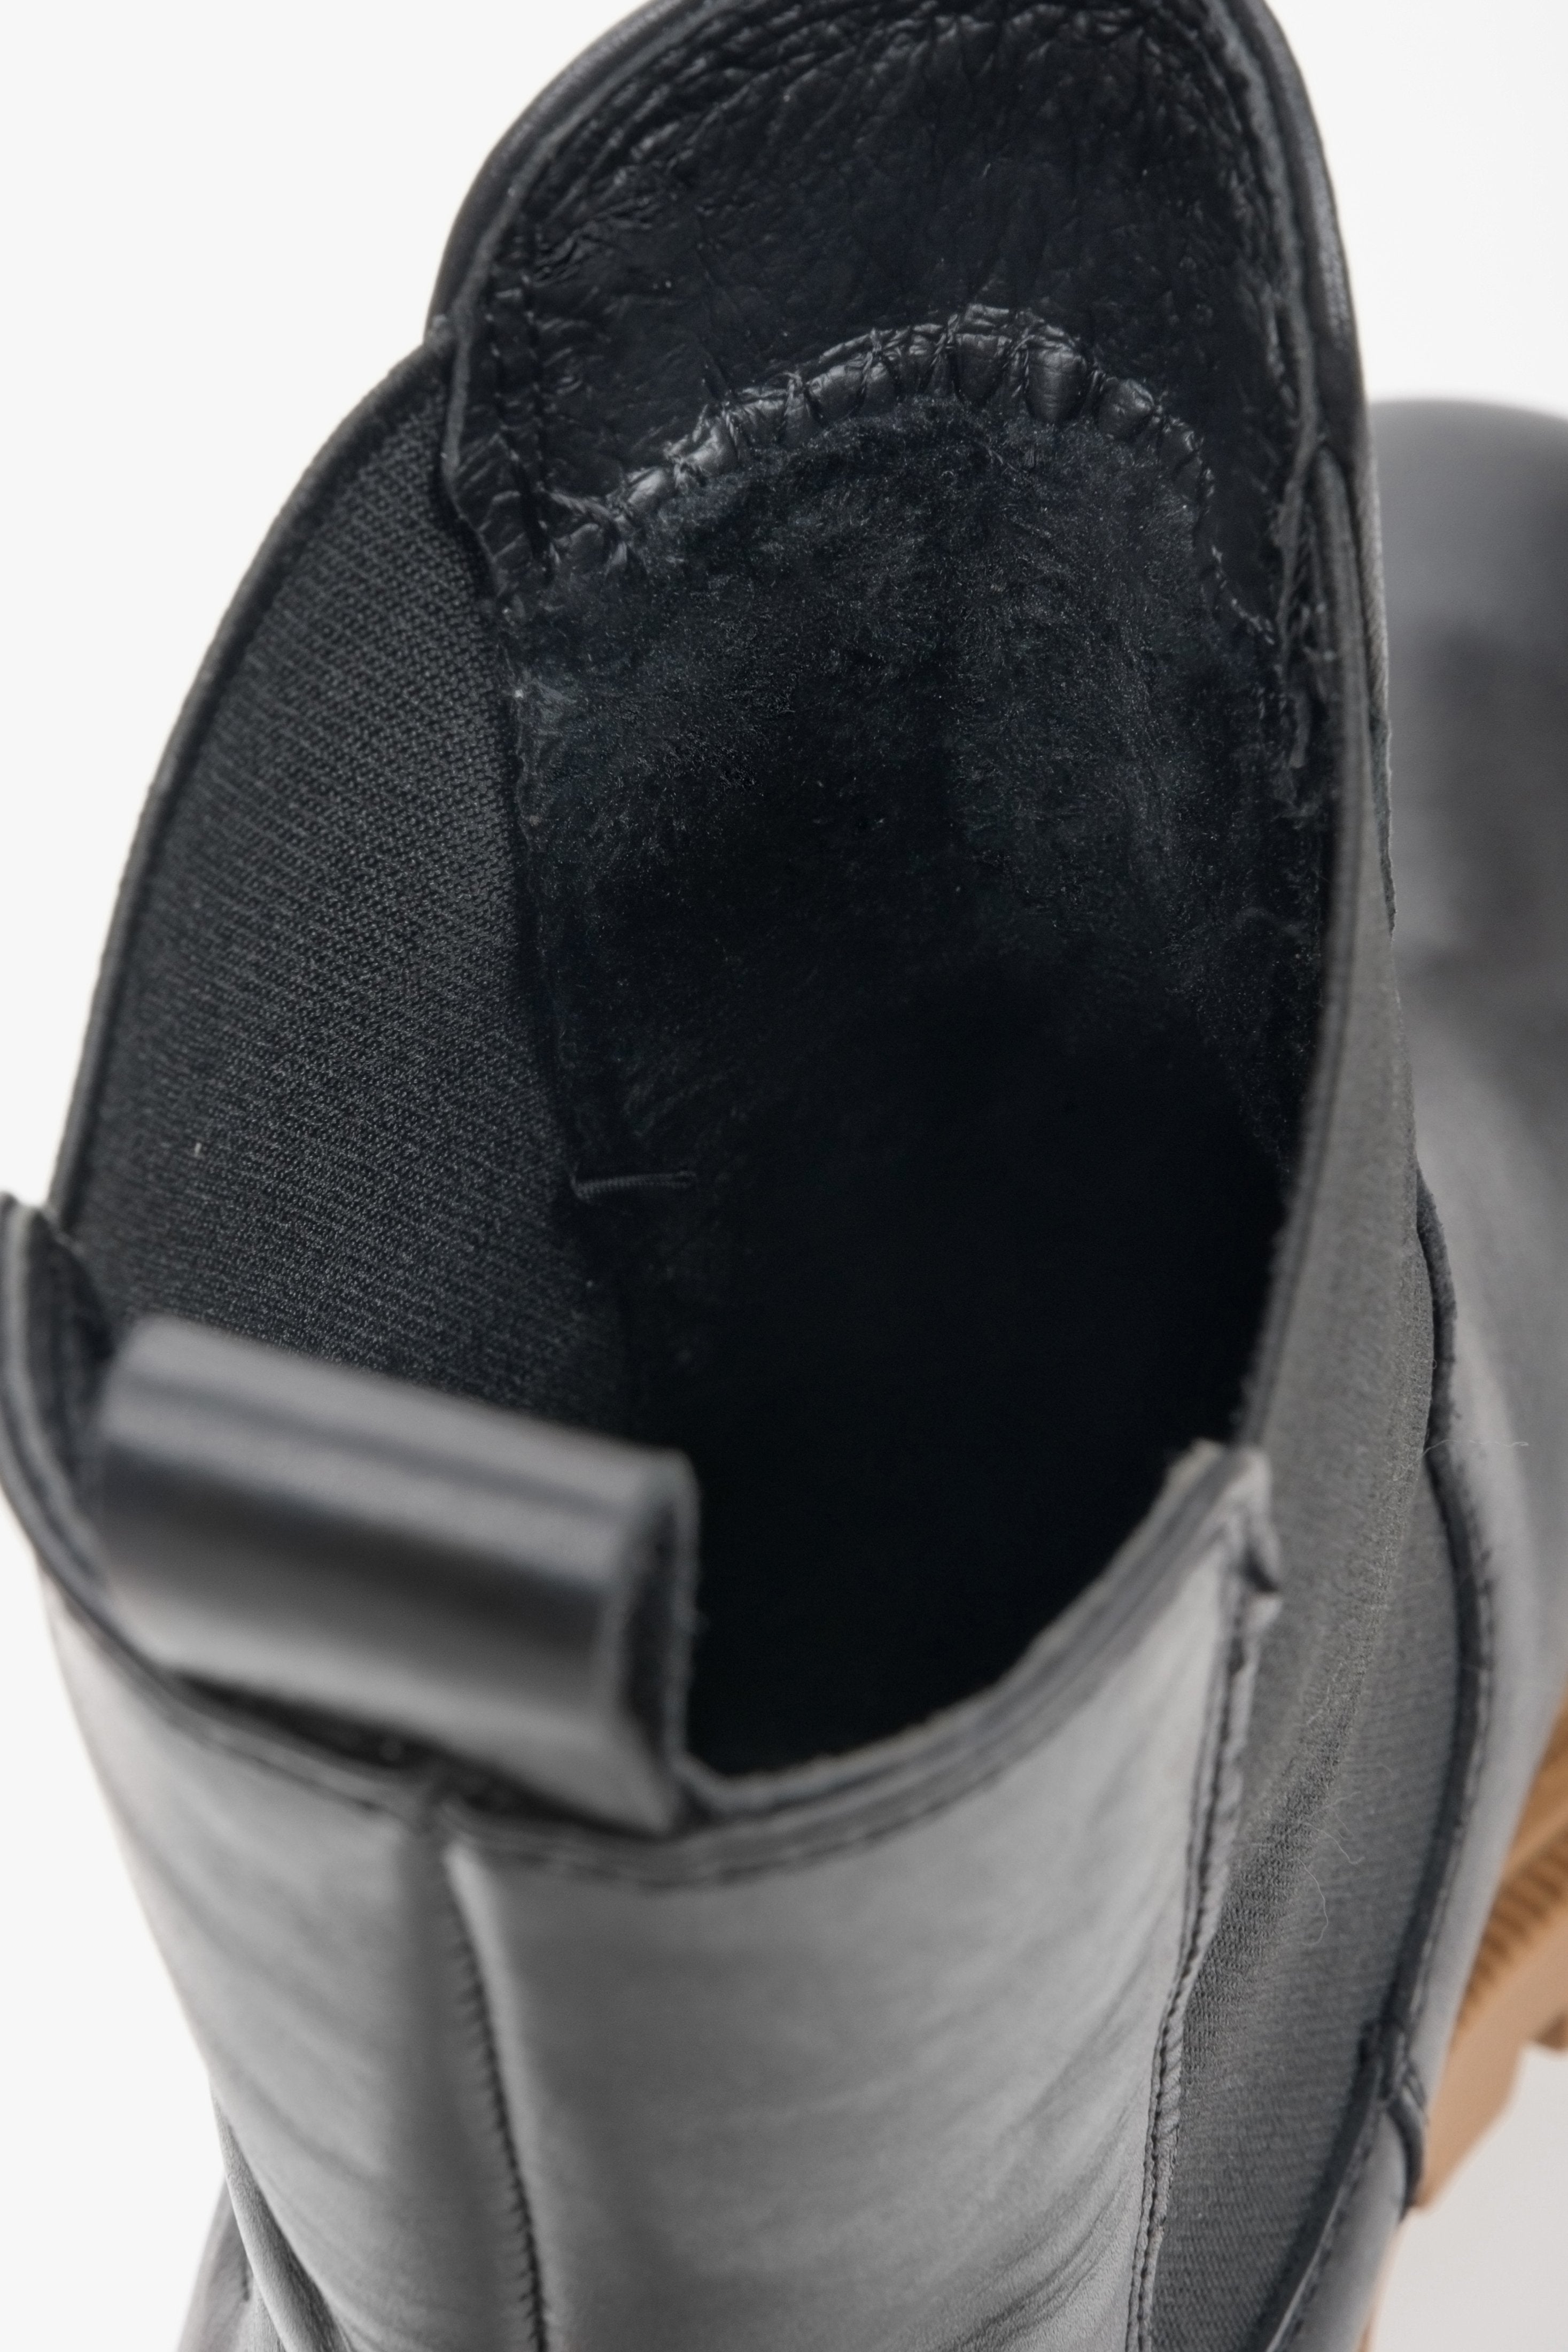 Damskie botki skórzane Estro w kolorze czarnym - zbliżenie na miękki wsad buta.